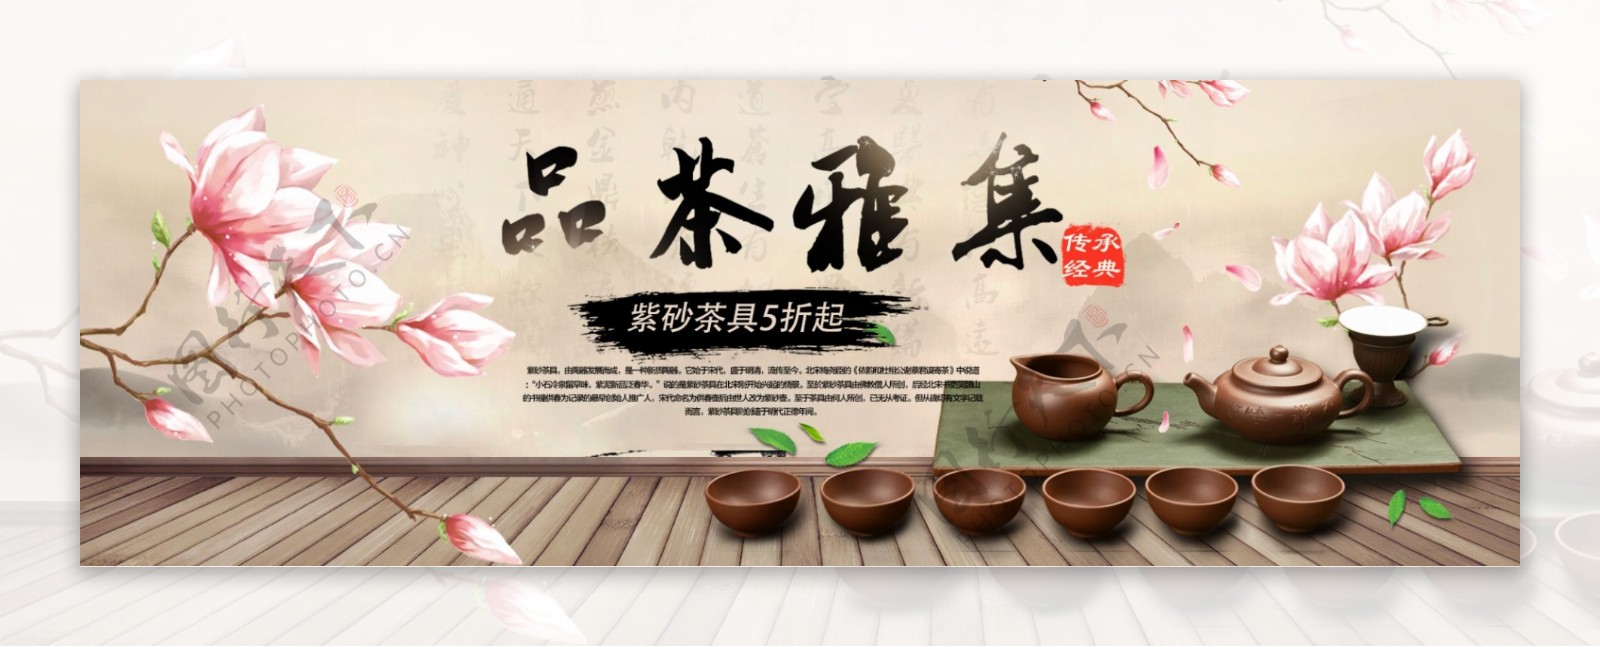 米色古典中国风茶具品茶淘宝天猫海报banner